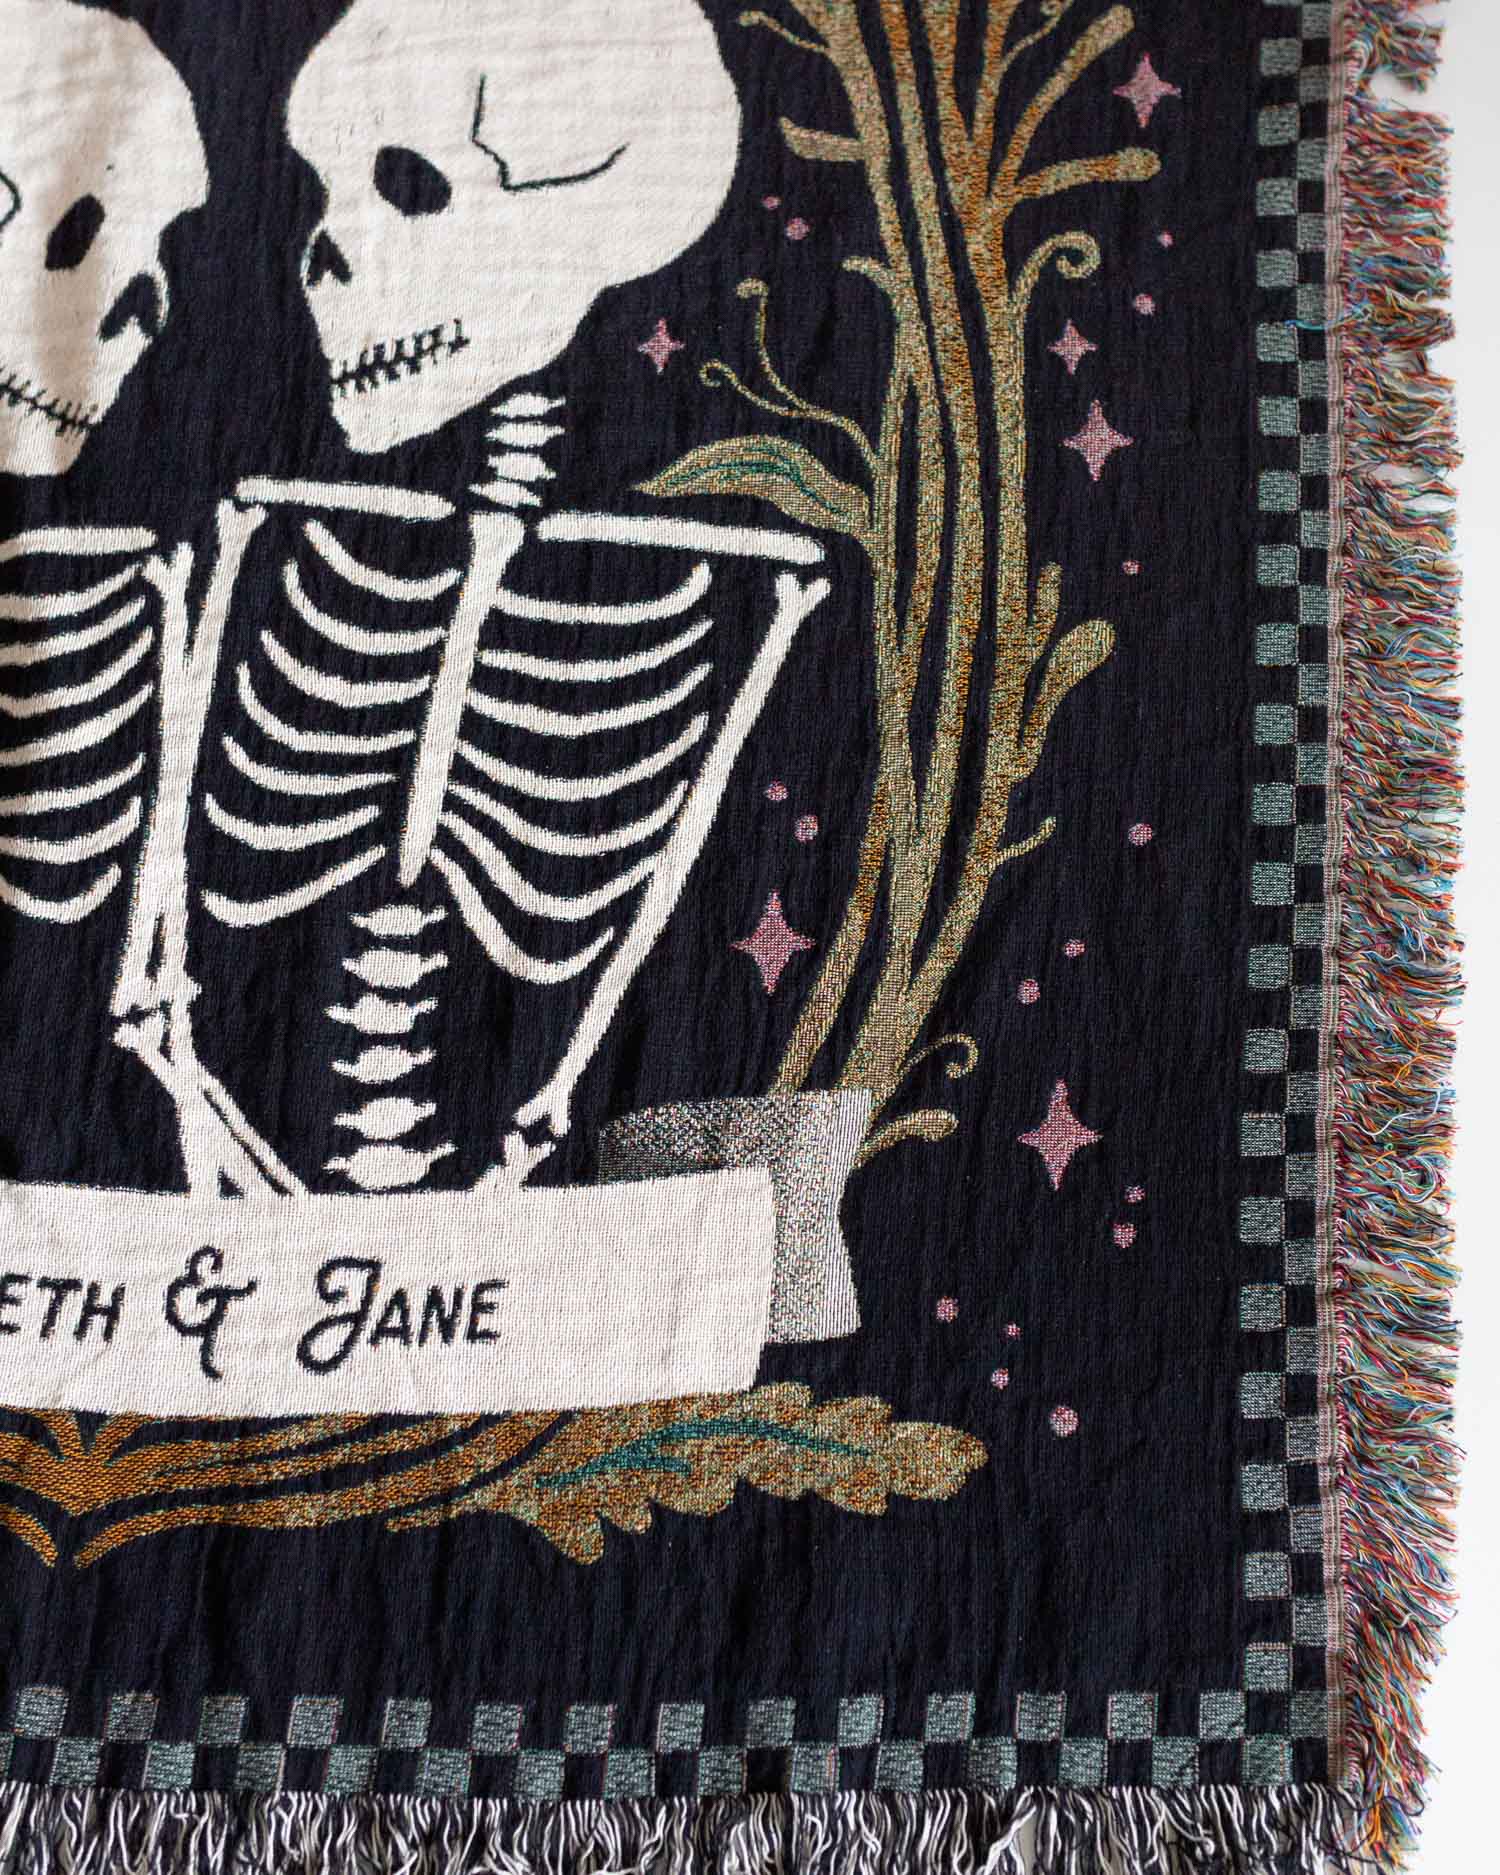 Skeletons 'Til Death' Blanket